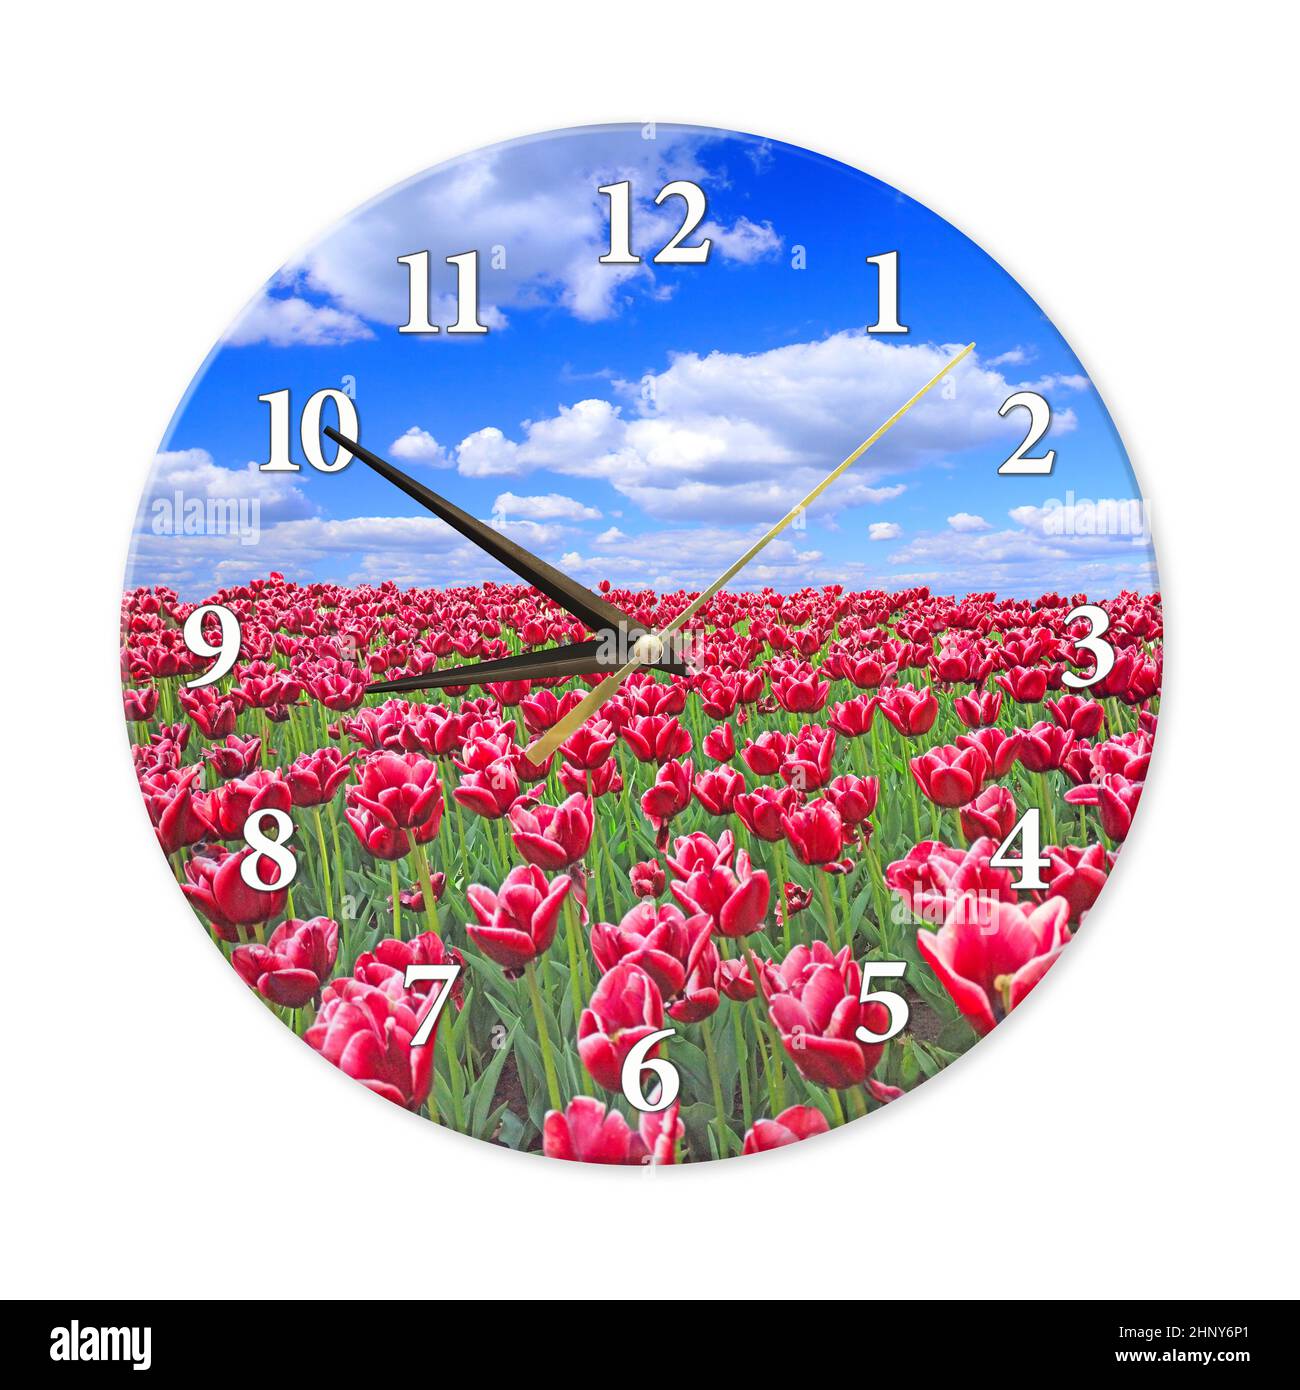 Wanduhr mit roten Tulpen auf Blumenbeet vor blauem Himmel. Wohndesign-Element. Uhr mit runder Wand, isoliert auf weißem Hintergrund. Moderne Runduhr. Hom Stockfoto